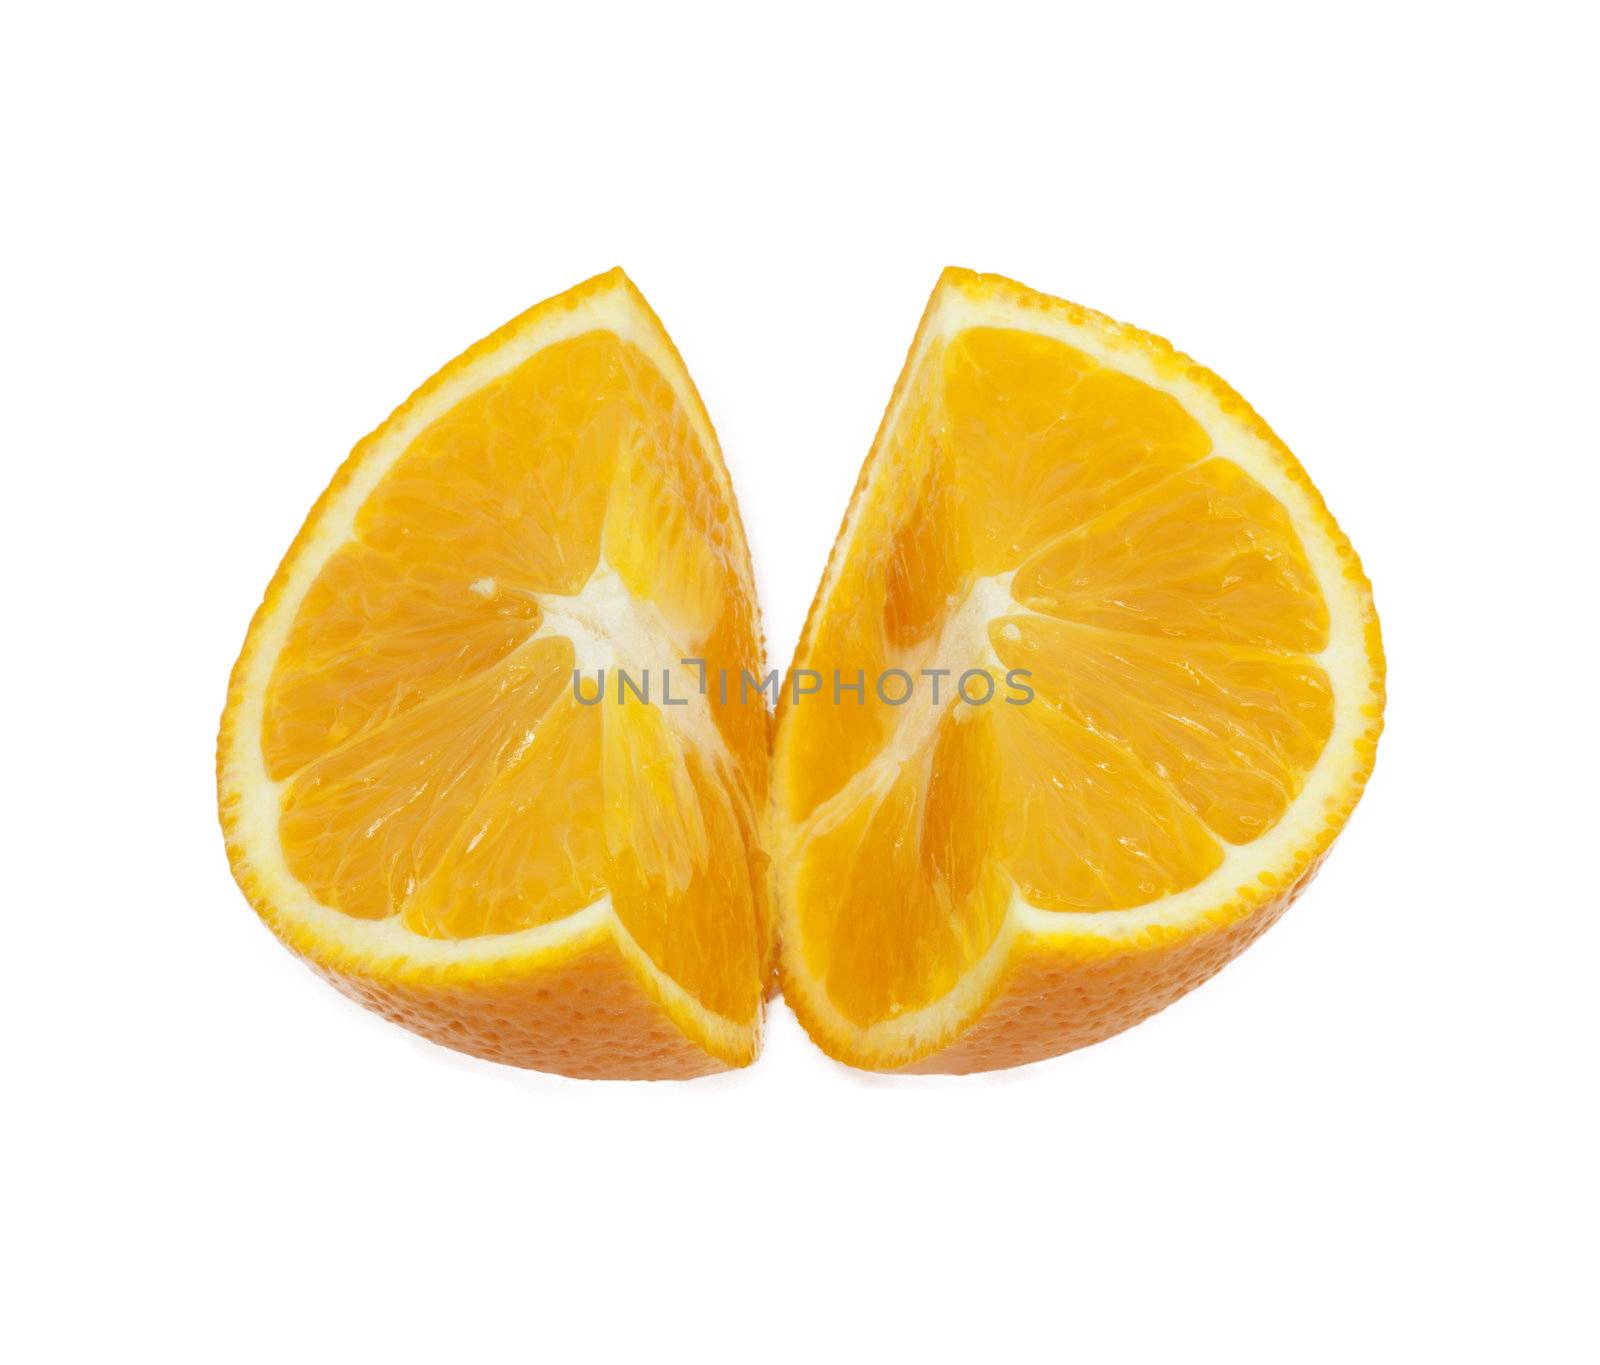 oranges on white background  by schankz